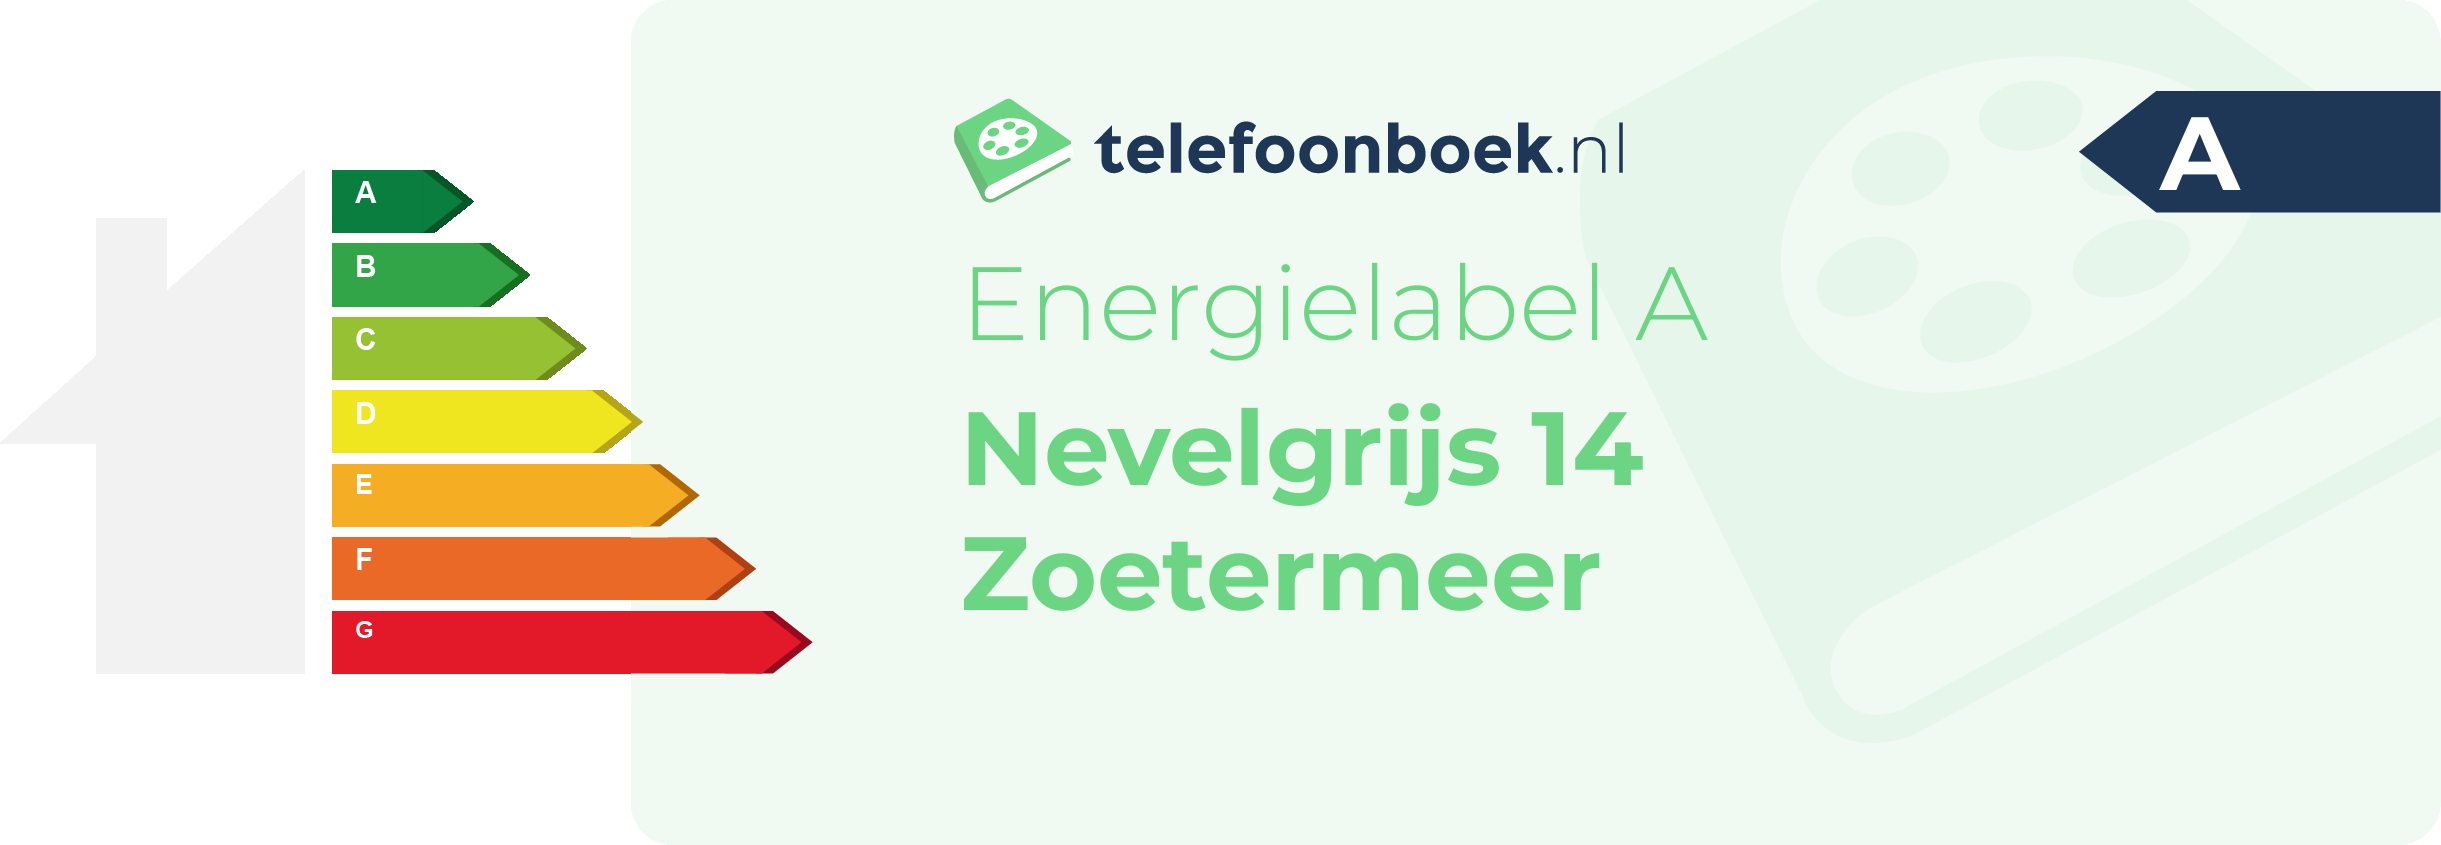 Energielabel Nevelgrijs 14 Zoetermeer